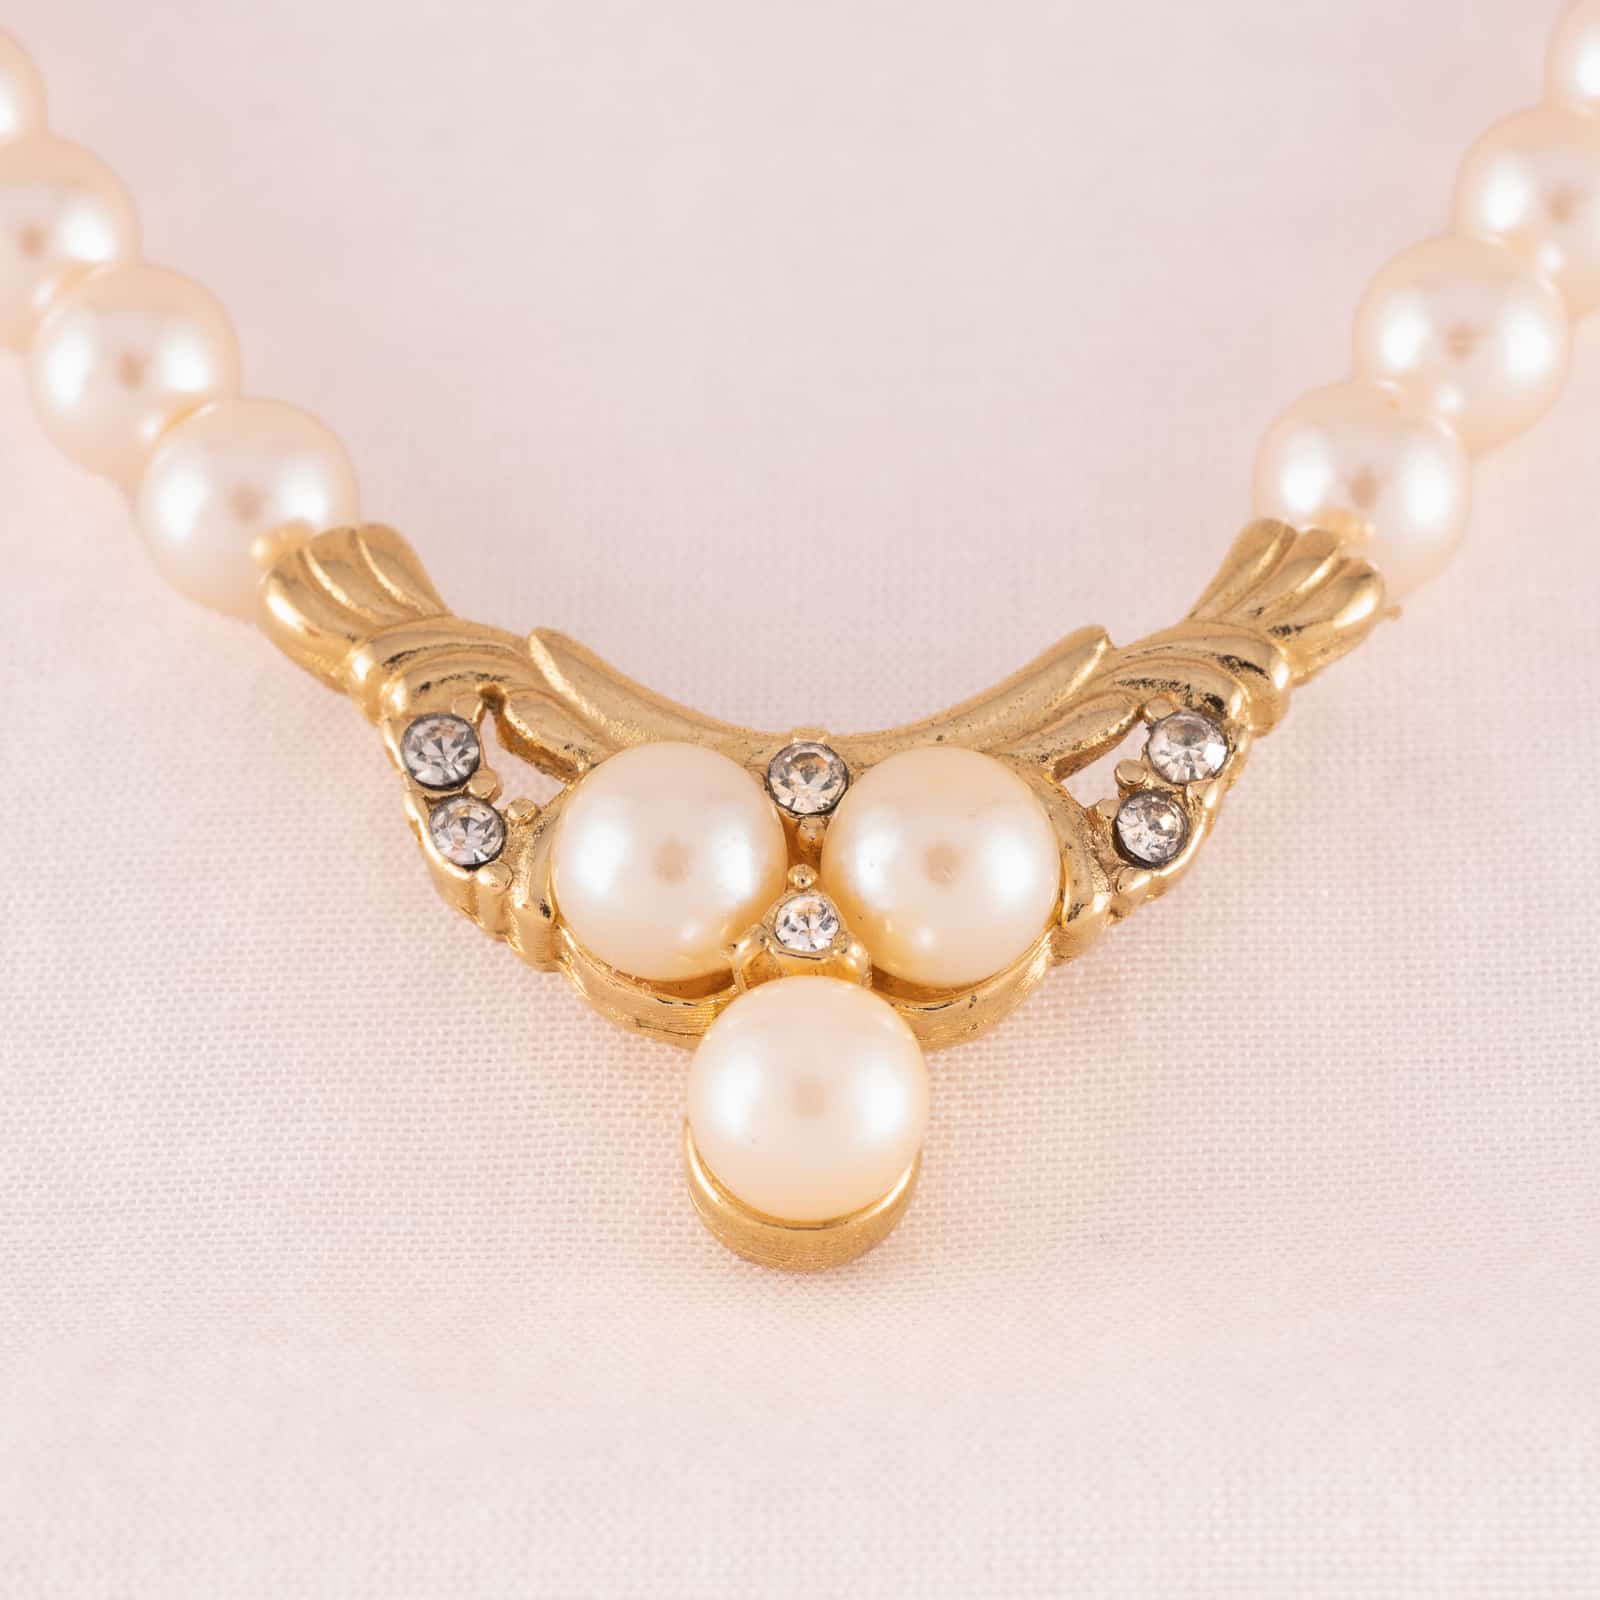 Richelieu Faux Pearl Bracelet Three Strands With Shell Motif - Etsy | Faux pearl  bracelet, Faux pearl, Pearl bracelet